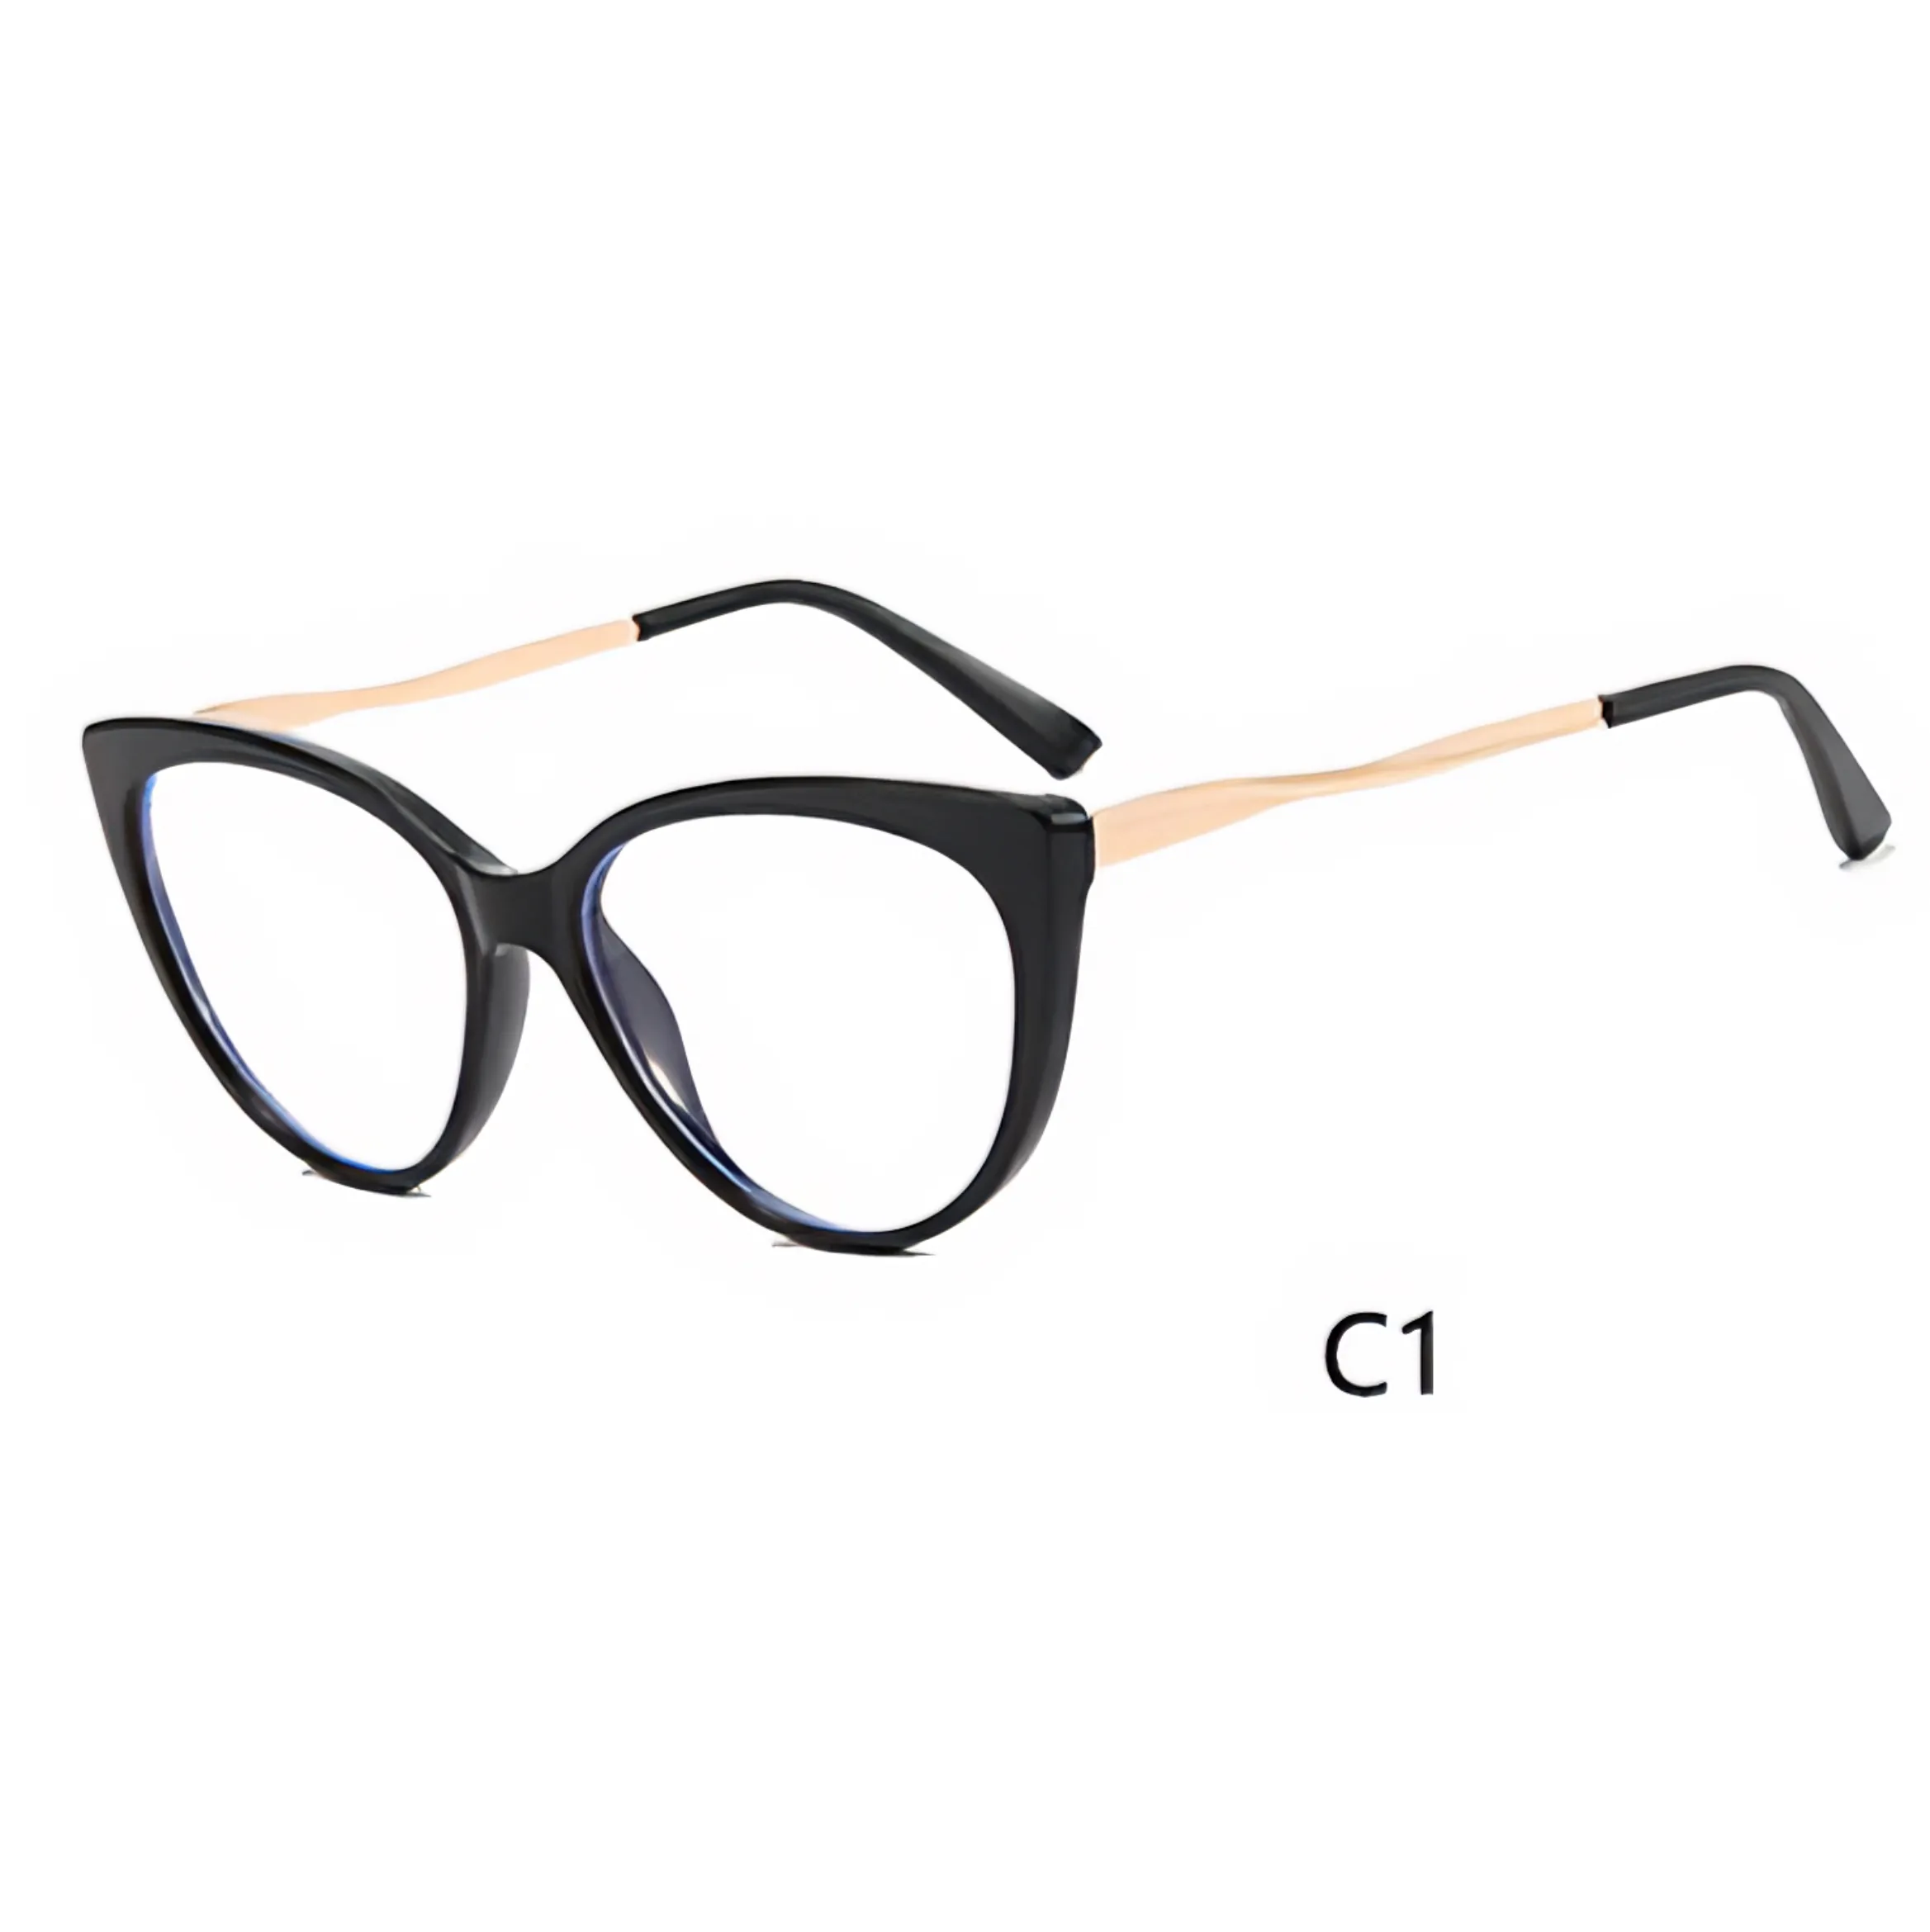 Latest Model TR90 Spectacle Frame Women Glasses Frame Fashion Optical Eyeglasses Fashion Eye Glass For Women